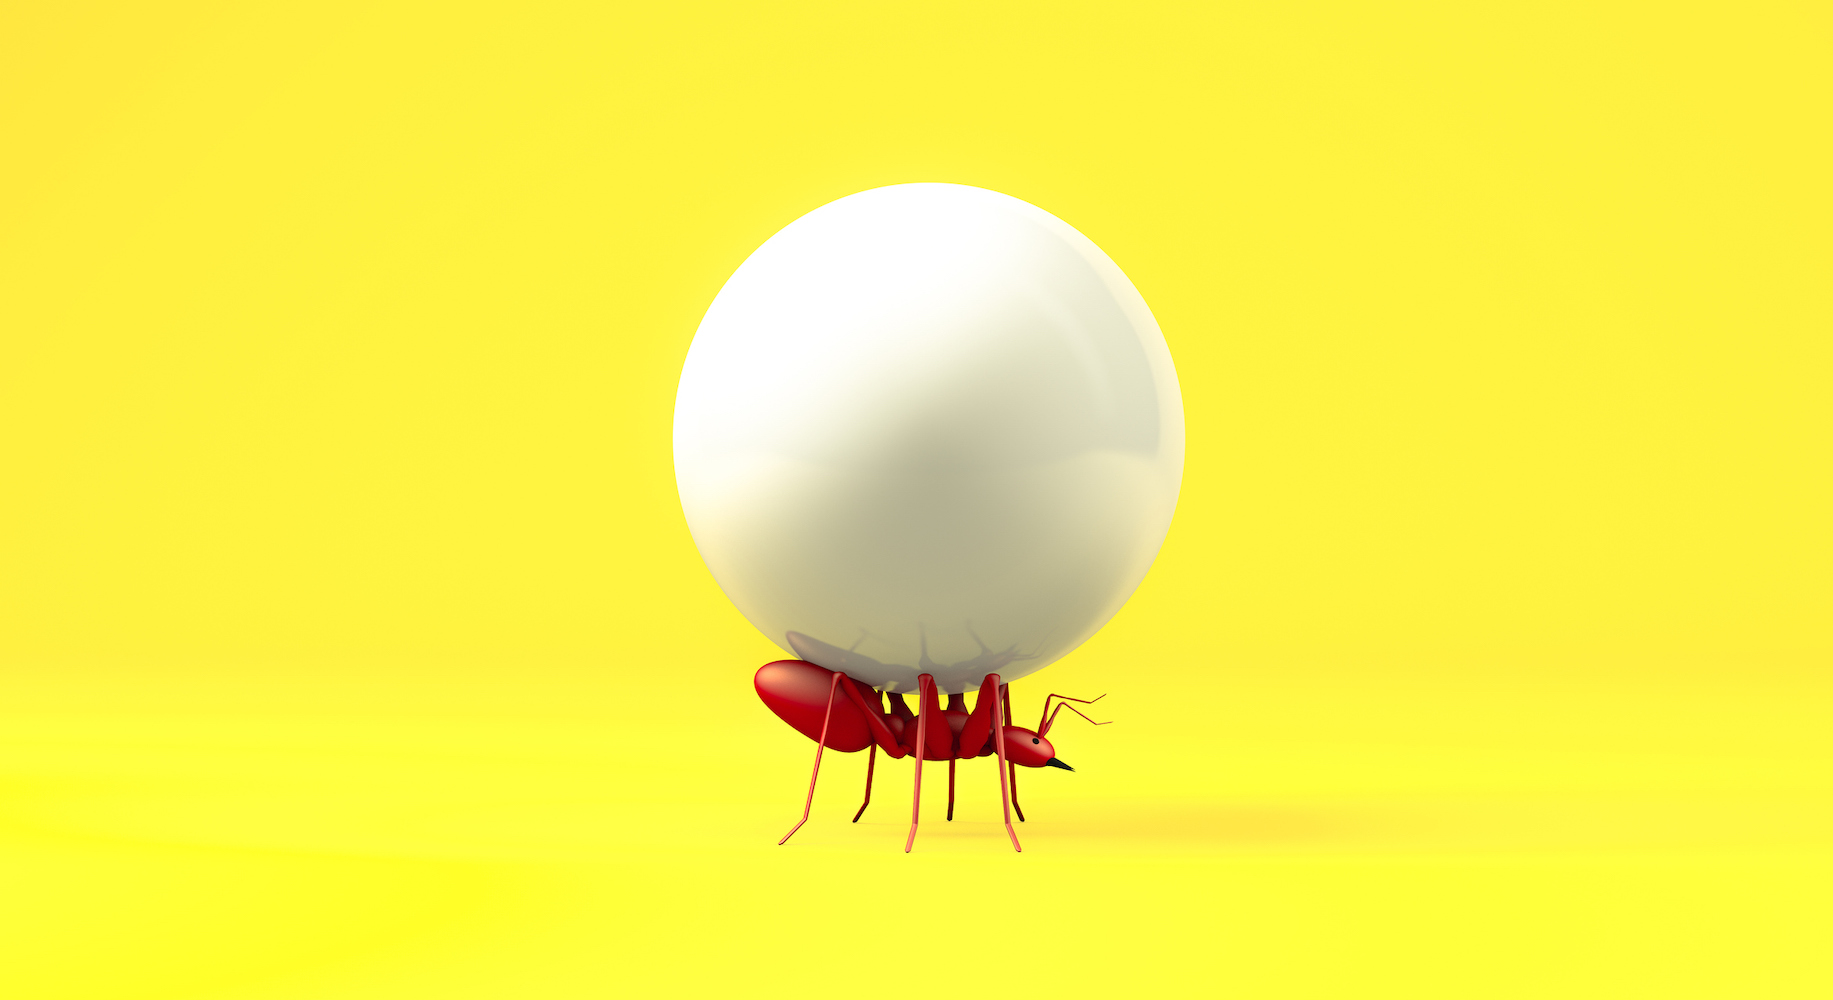 Representación 3d, Cierre la hormiga roja realista levantando la bola blanca de caramelo con un espacio vacío en blanco para su copia, fondo amarillo aislado.